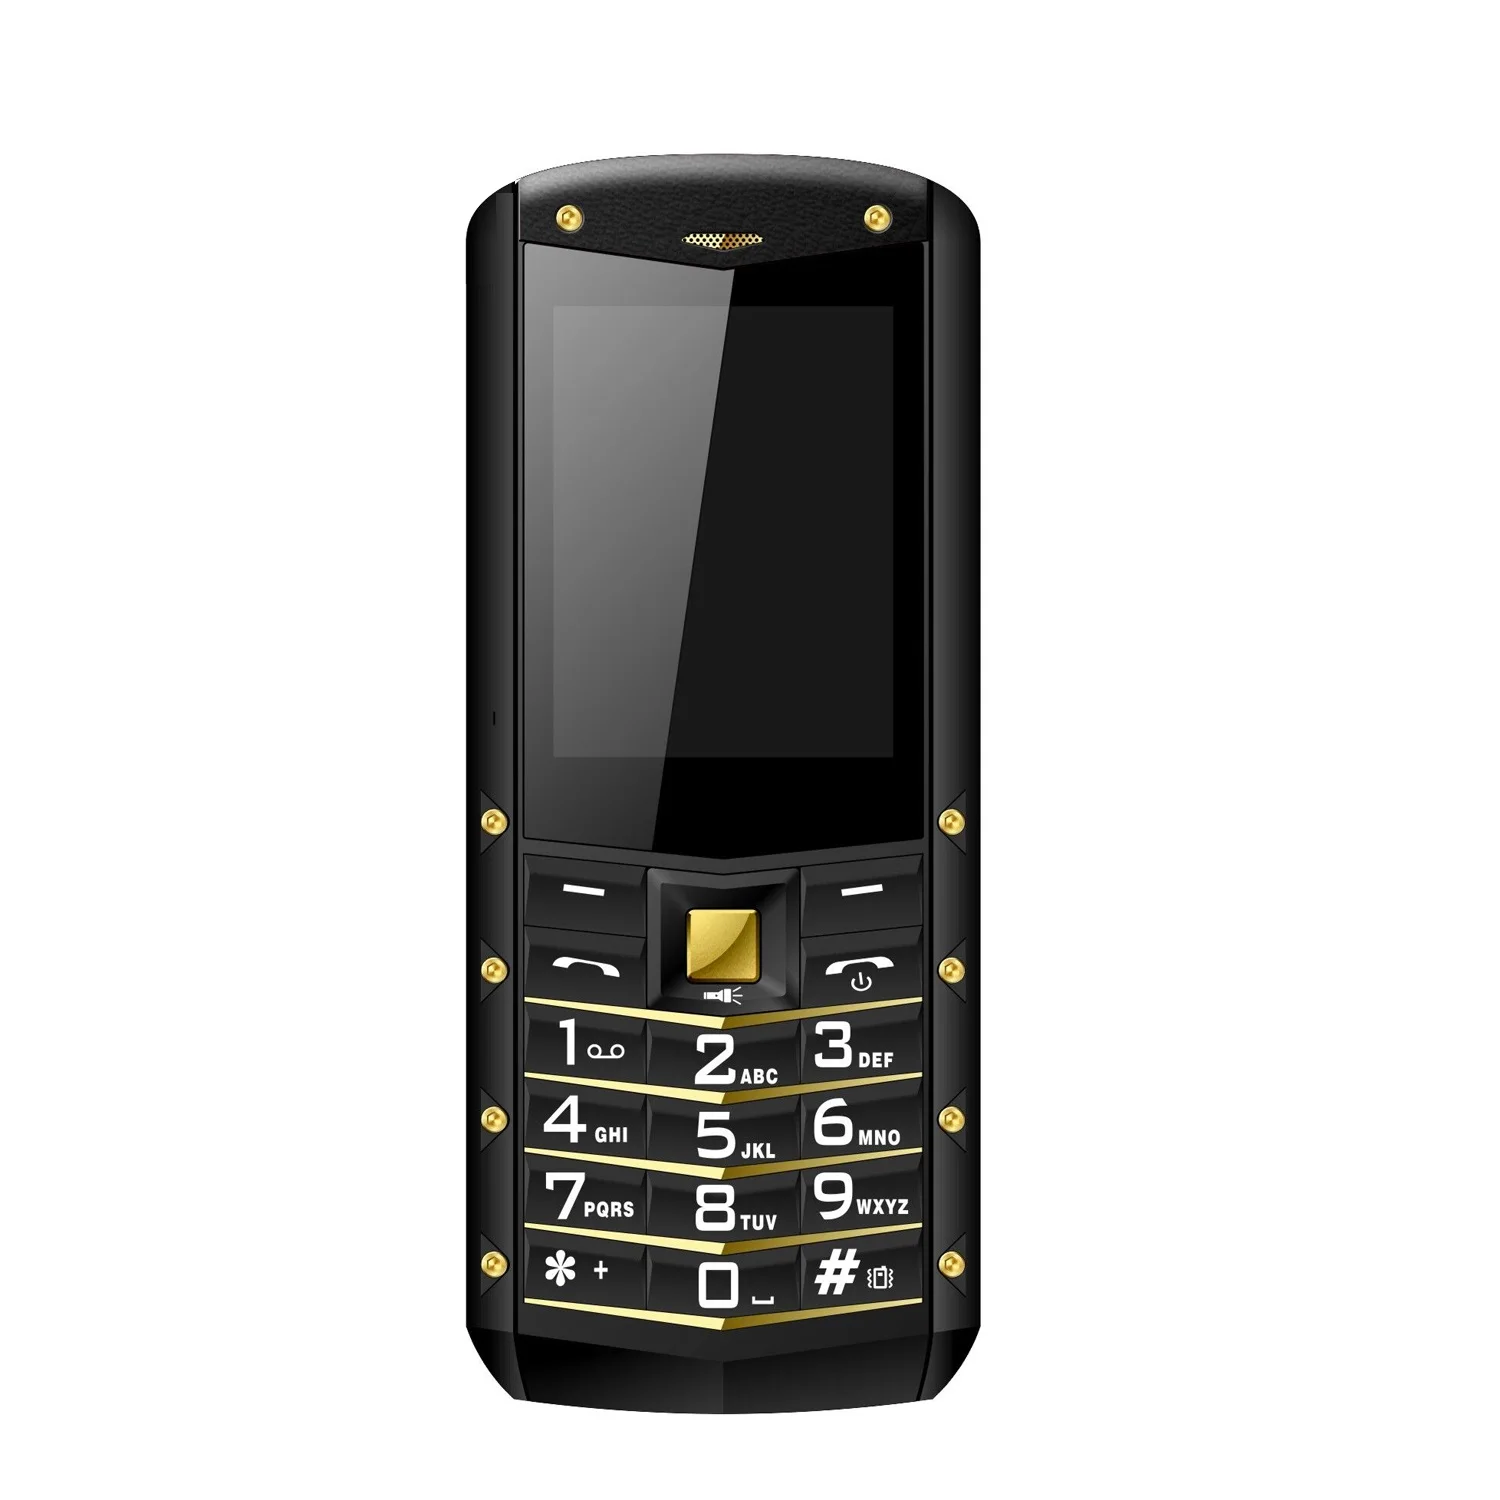 AGM M2 IP68 Водонепроницаемый телефона 2,4 дюйма Телефон Бар Dual SIM карты Bluetooth 1970 mAh FM 32 Мб Оперативная память 32 Мб Встроенная память клавиатура 2G GSM телефон - Цвет: Золотой